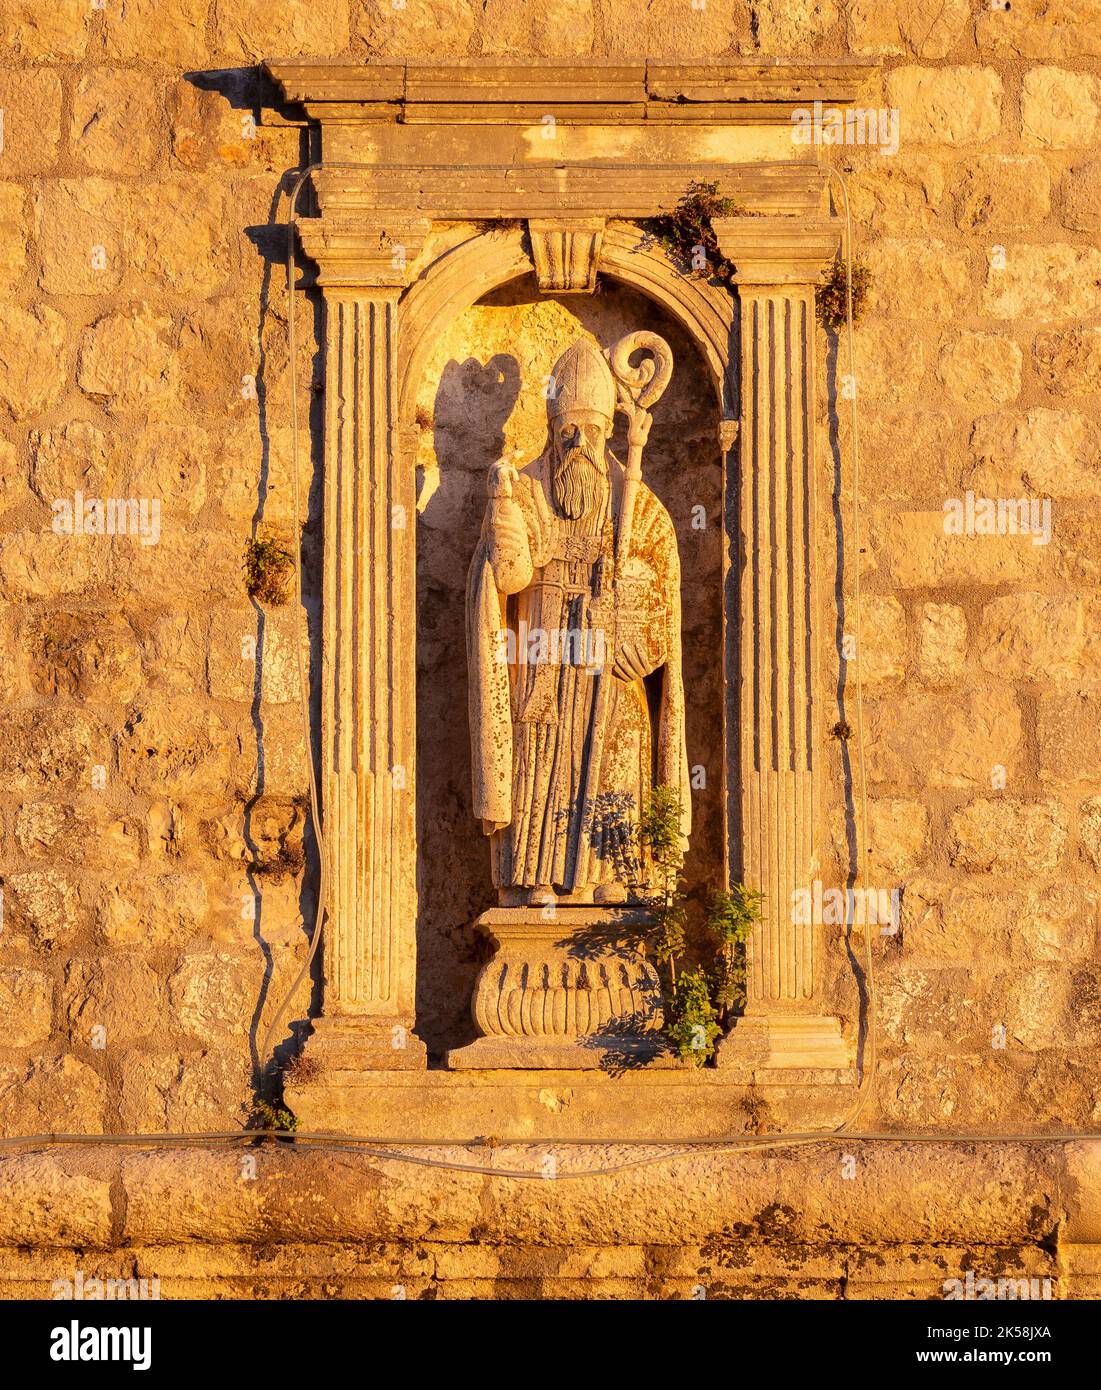 DUBROVNIK, CROATIE, EUROPE - Statue de Saint Blaise, patron de Dubrovnik, sur la Tour Minceta. Banque D'Images